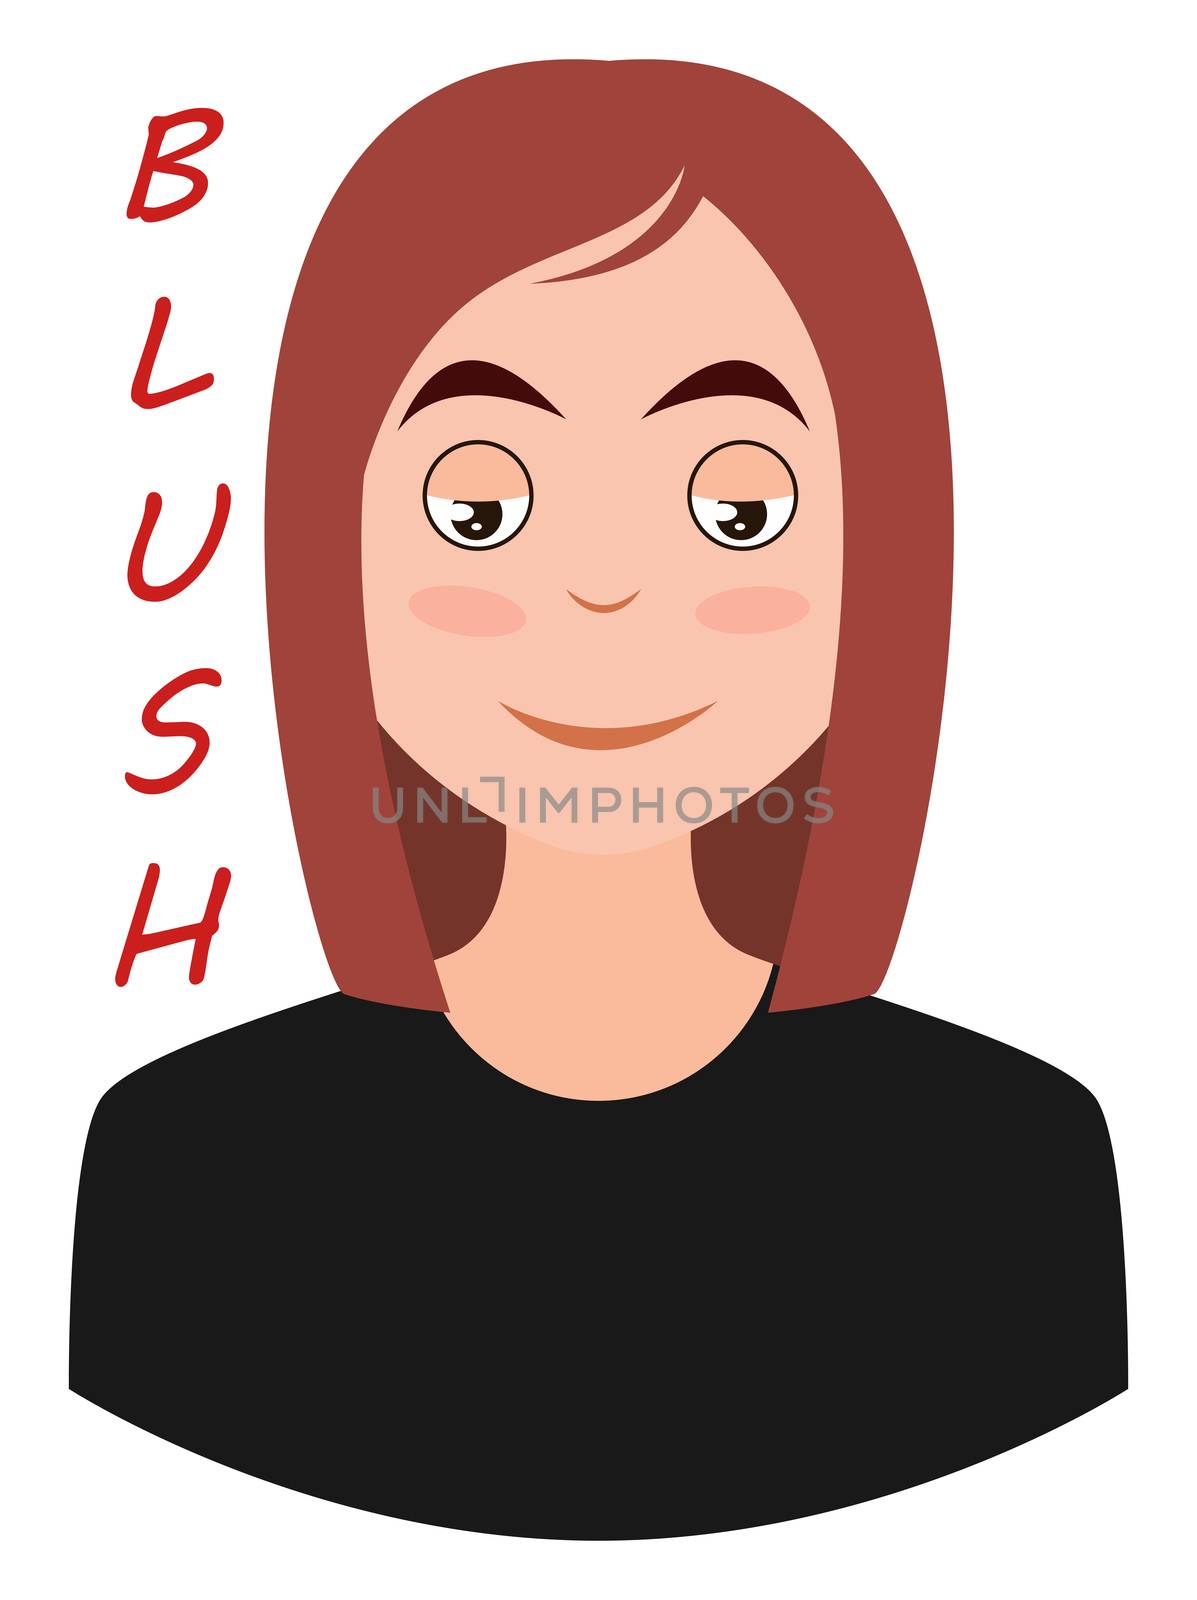 Girl blushing emoji, illustration, vector on white background by Morphart